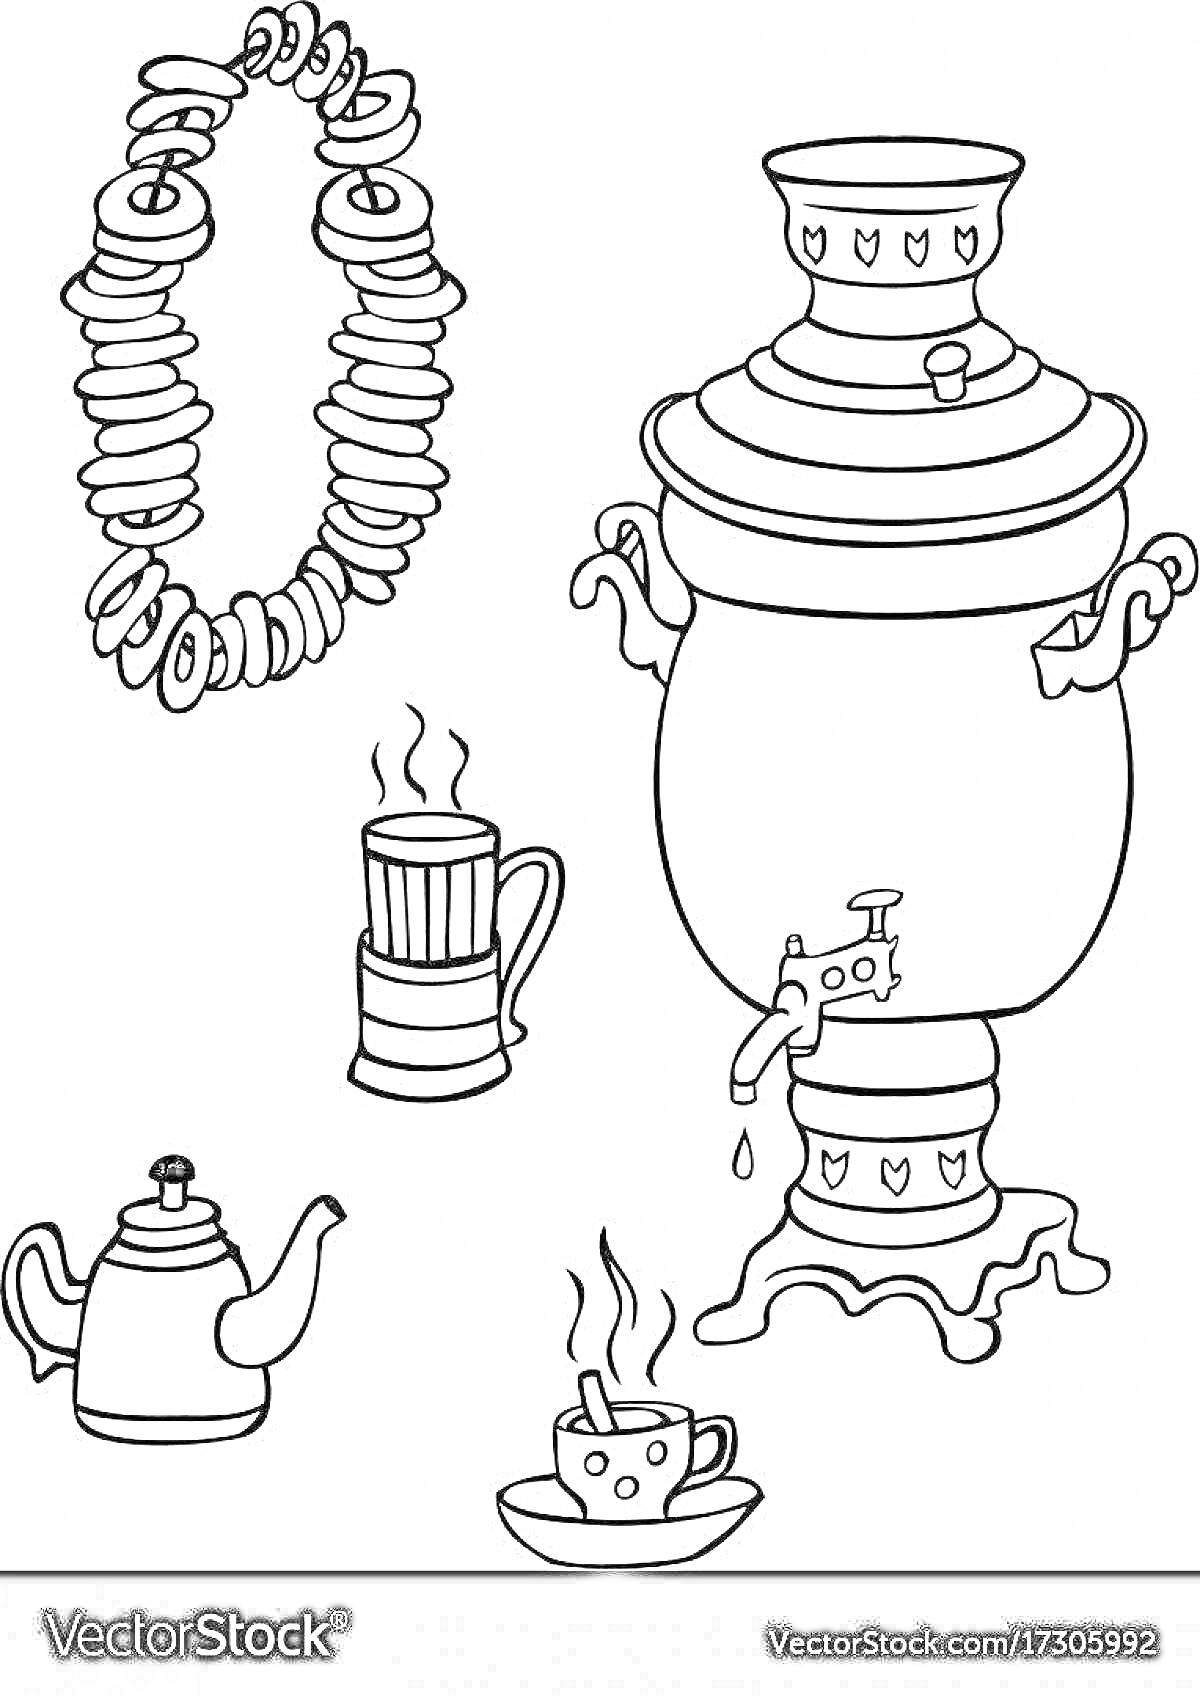 Раскраска Самовар с чашкой, чайником, кружкой и баранками